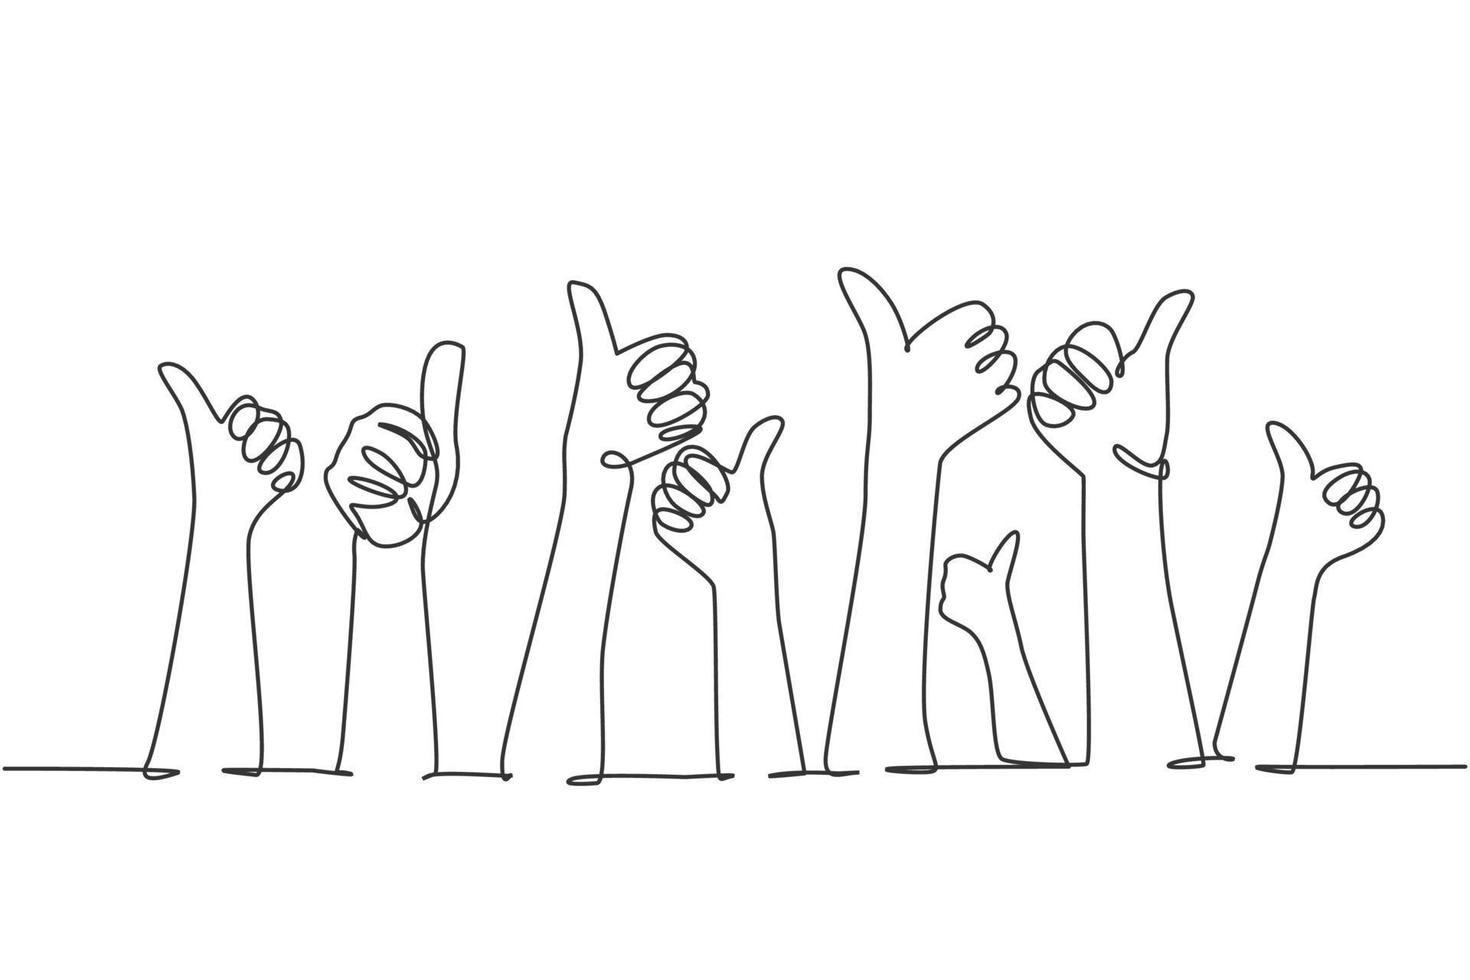 Eine Strichzeichnung von Menschen, die die Hände mit Daumen nach oben heben. gute Service-Exzellenz im Business-Sektor-Zeichen-Konzept. durchgehende Linie zeichnen Grafikdesign-Vektorillustration vektor